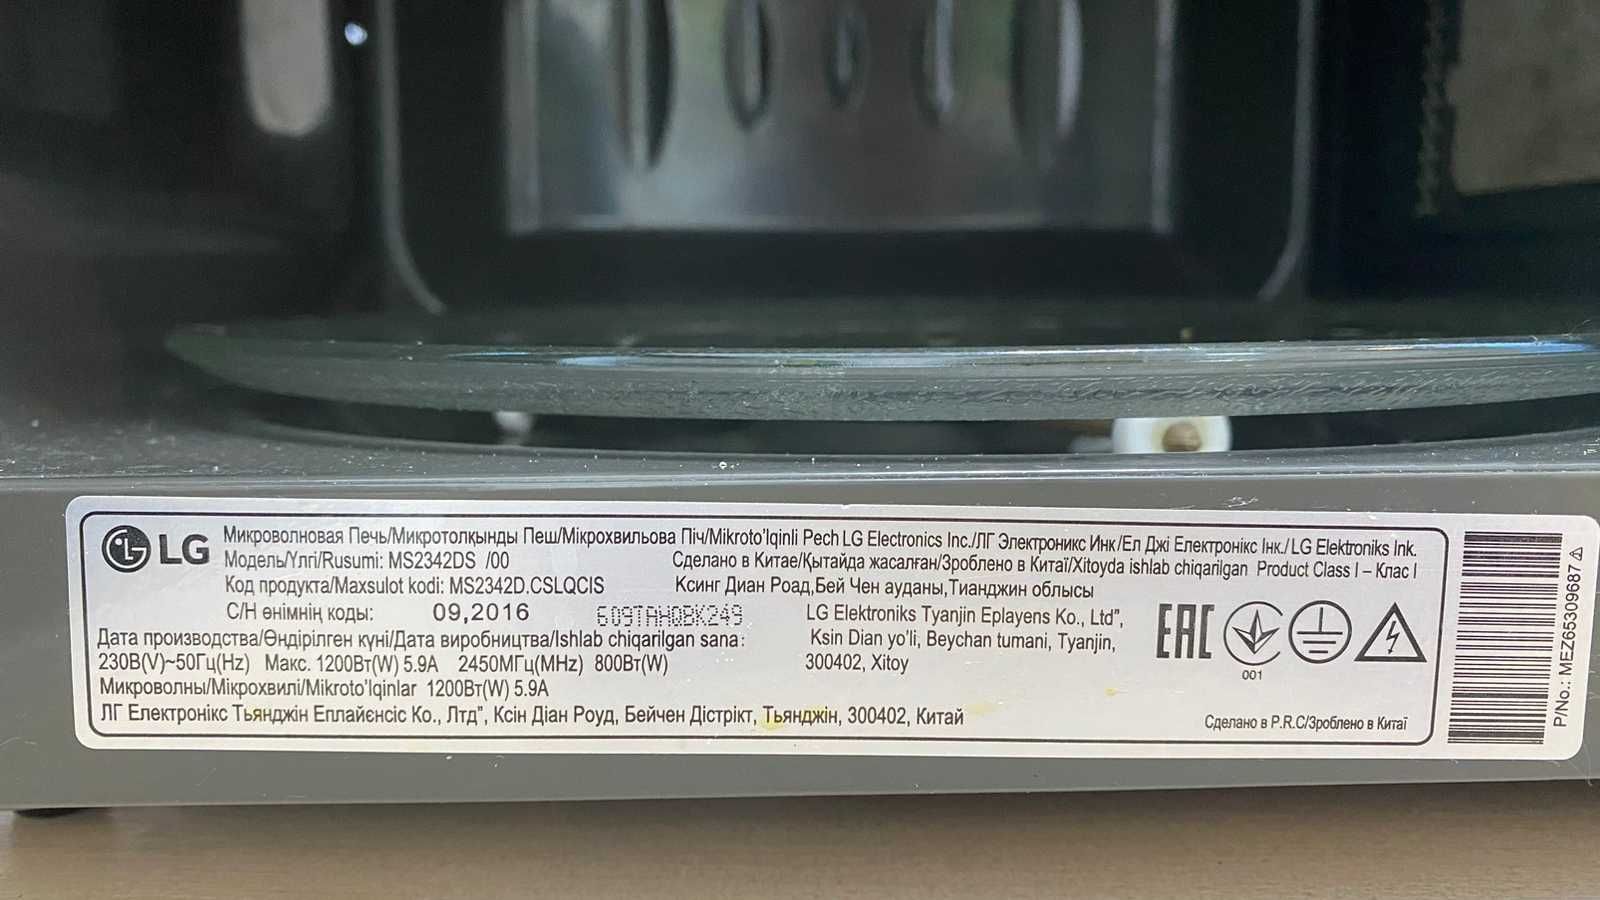 Микроволновая печь,гриль LG MB40R42DS,серебристый,БУотличном состоянии